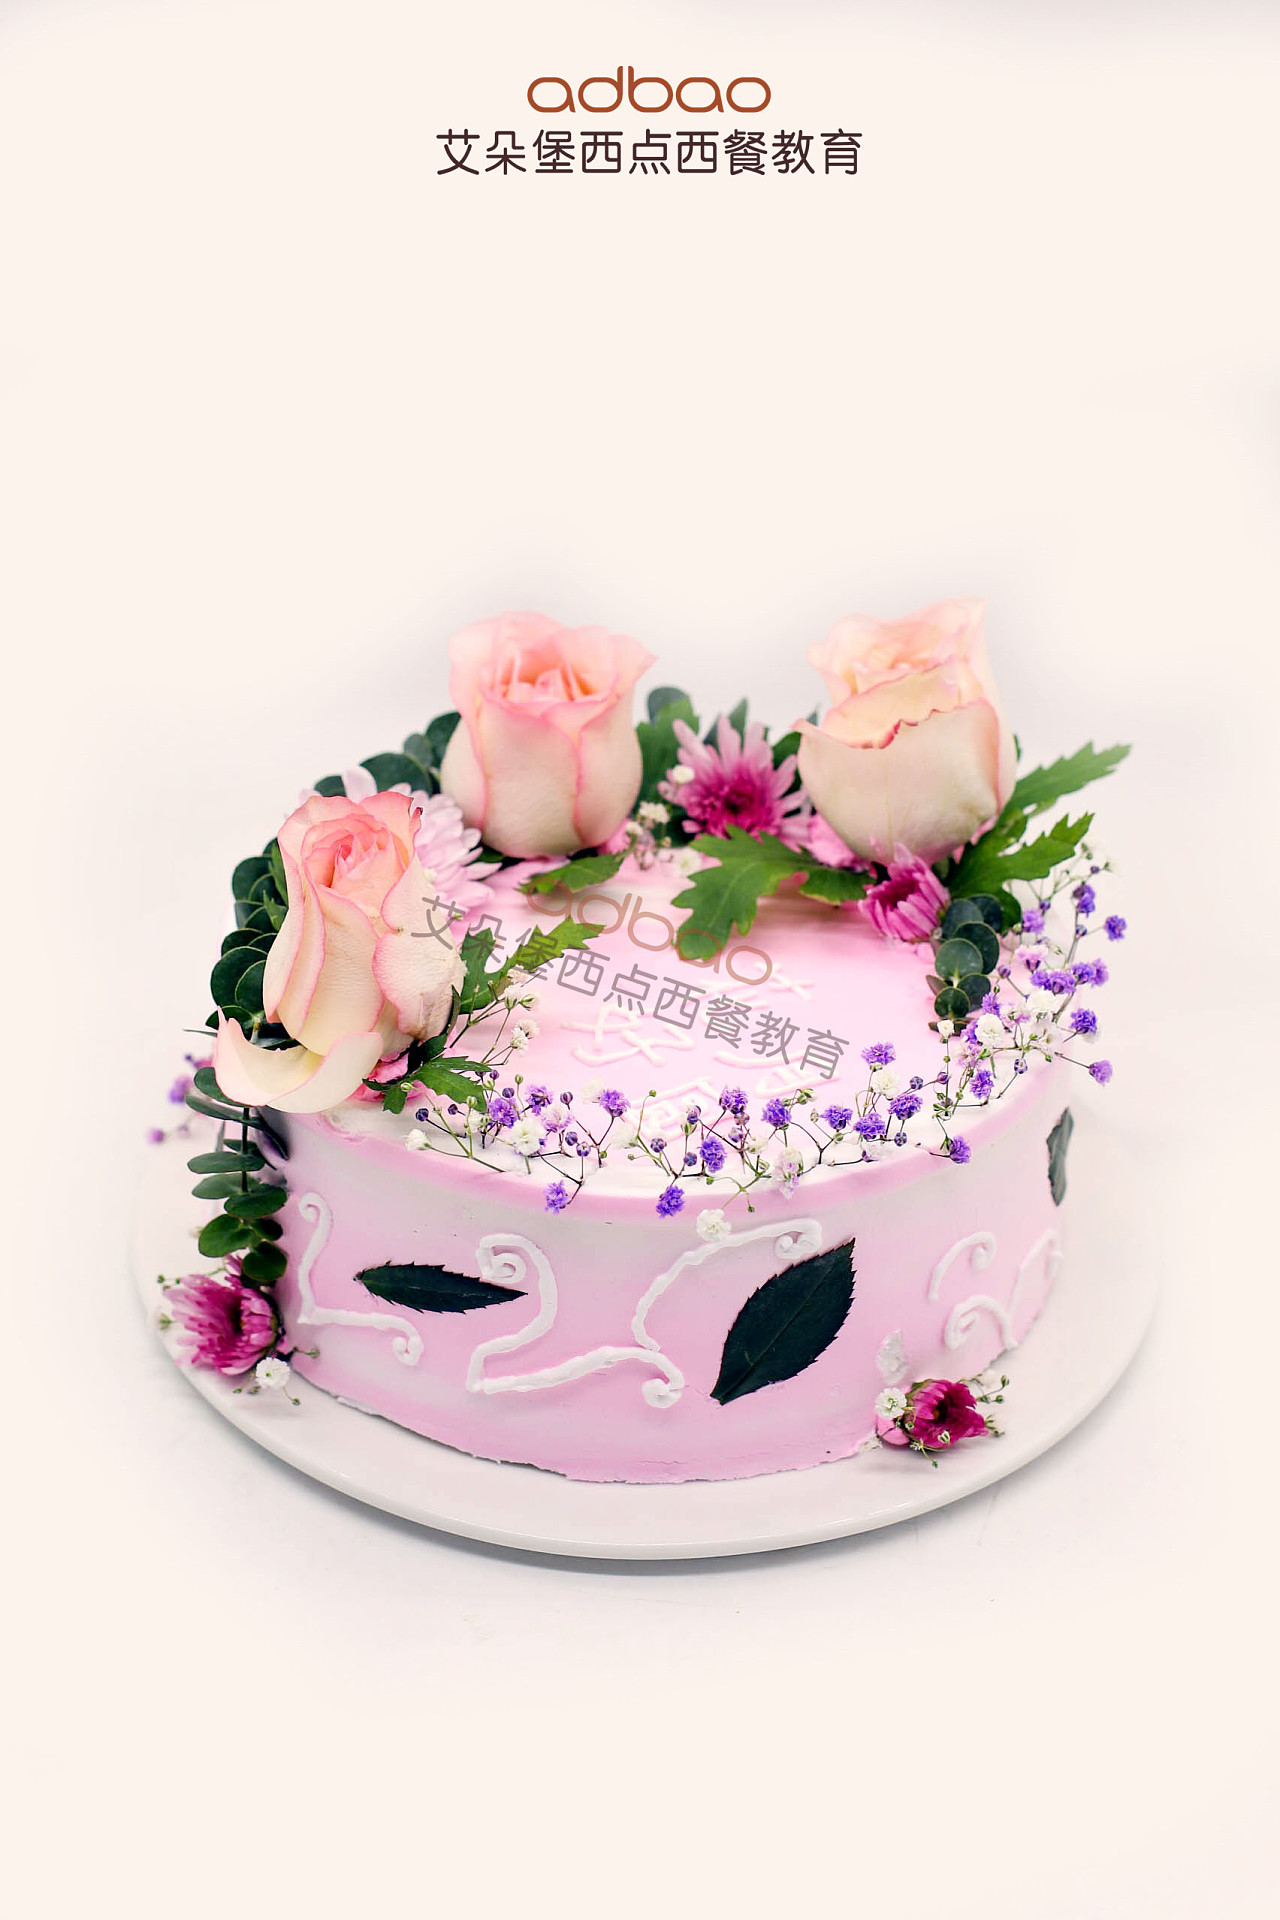 双层公主蛋糕🎂。#网红生日蛋糕款式图集 #人气蛋糕推荐 # - 抖音